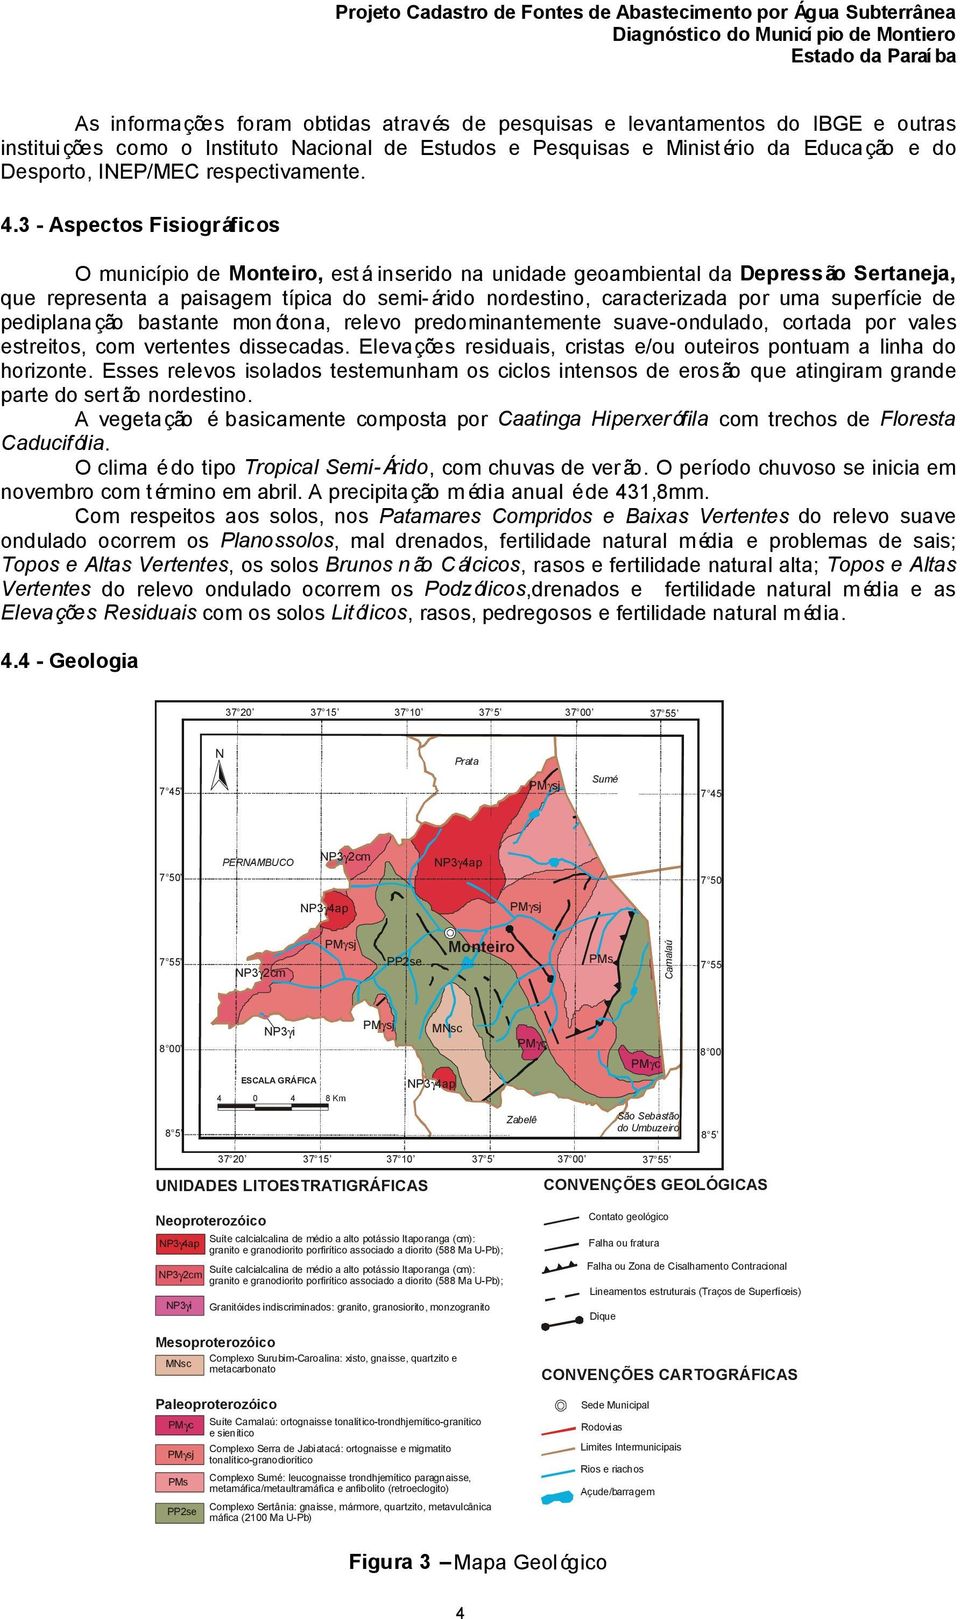 3 - Aspectos Fisiográficos O município de Monteiro, está inserido na unidade geoambiental da Depressão Sertaneja, que representa a paisagem típica do semi-árido nordestino, caracterizada por uma